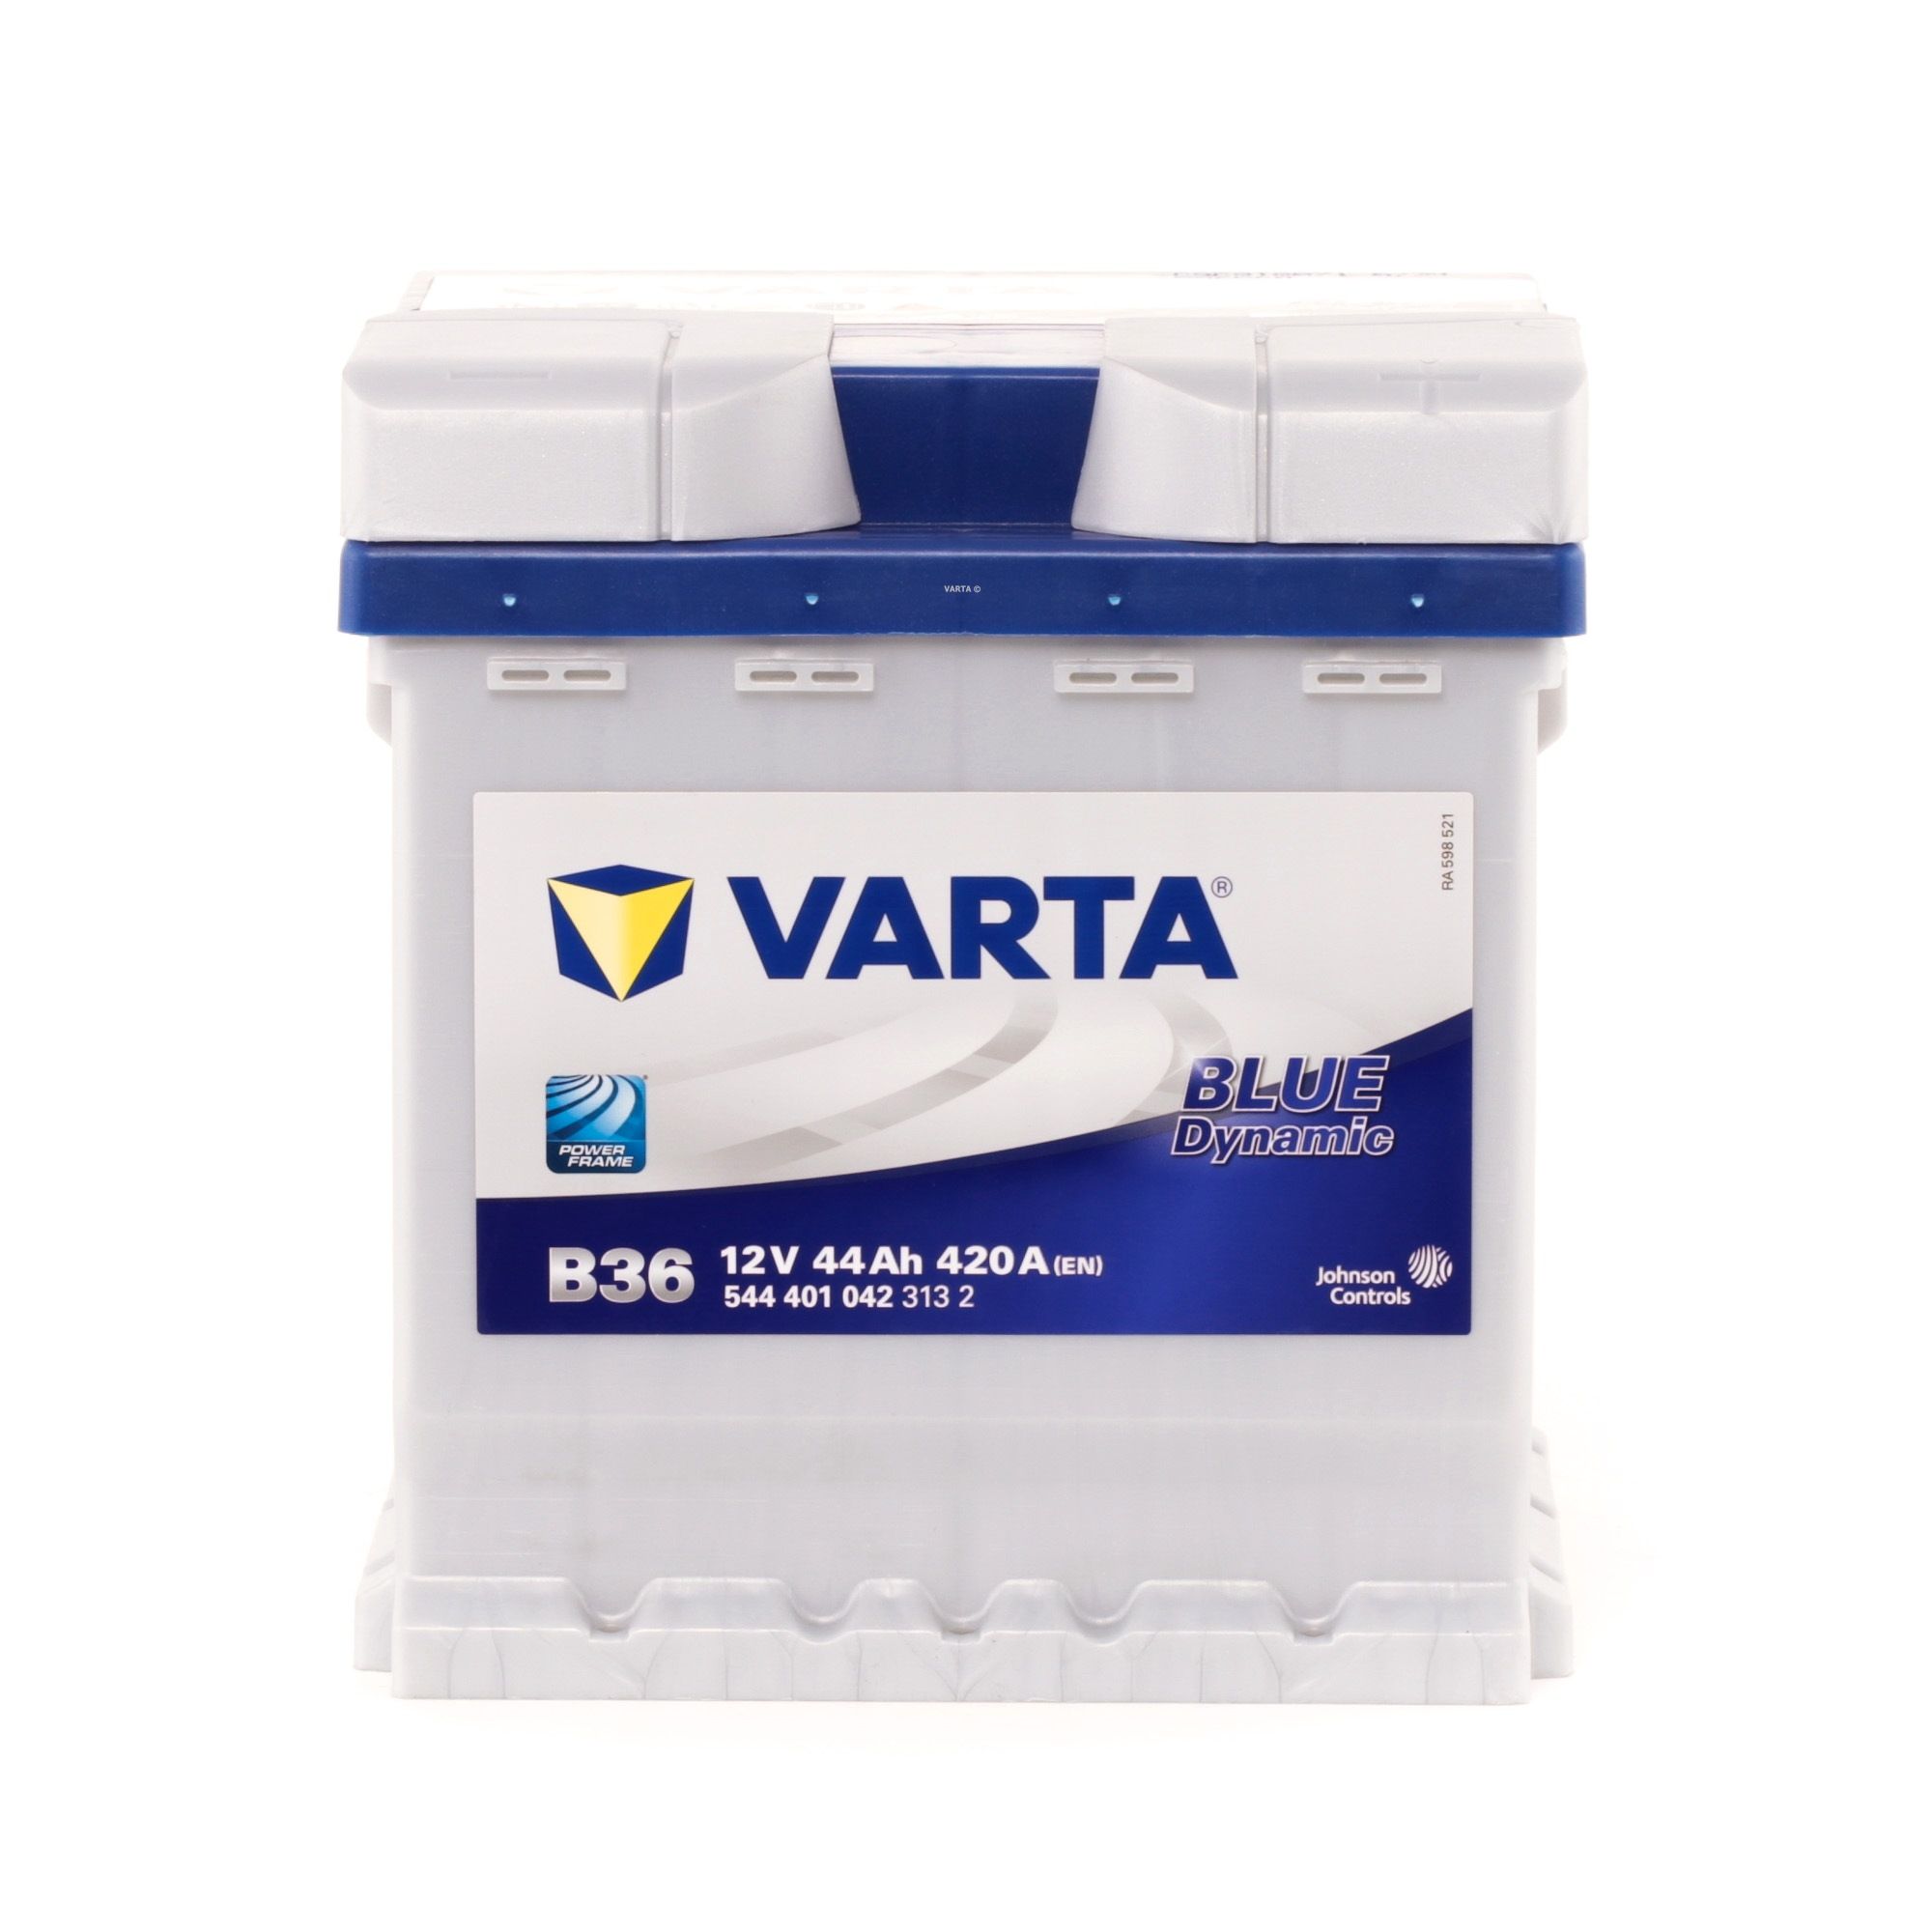 VARTA BLUE dynamic 5444010423132 Startovací baterie 12V 44Ah 420A B13 L0 Olověná kyselinová baterie